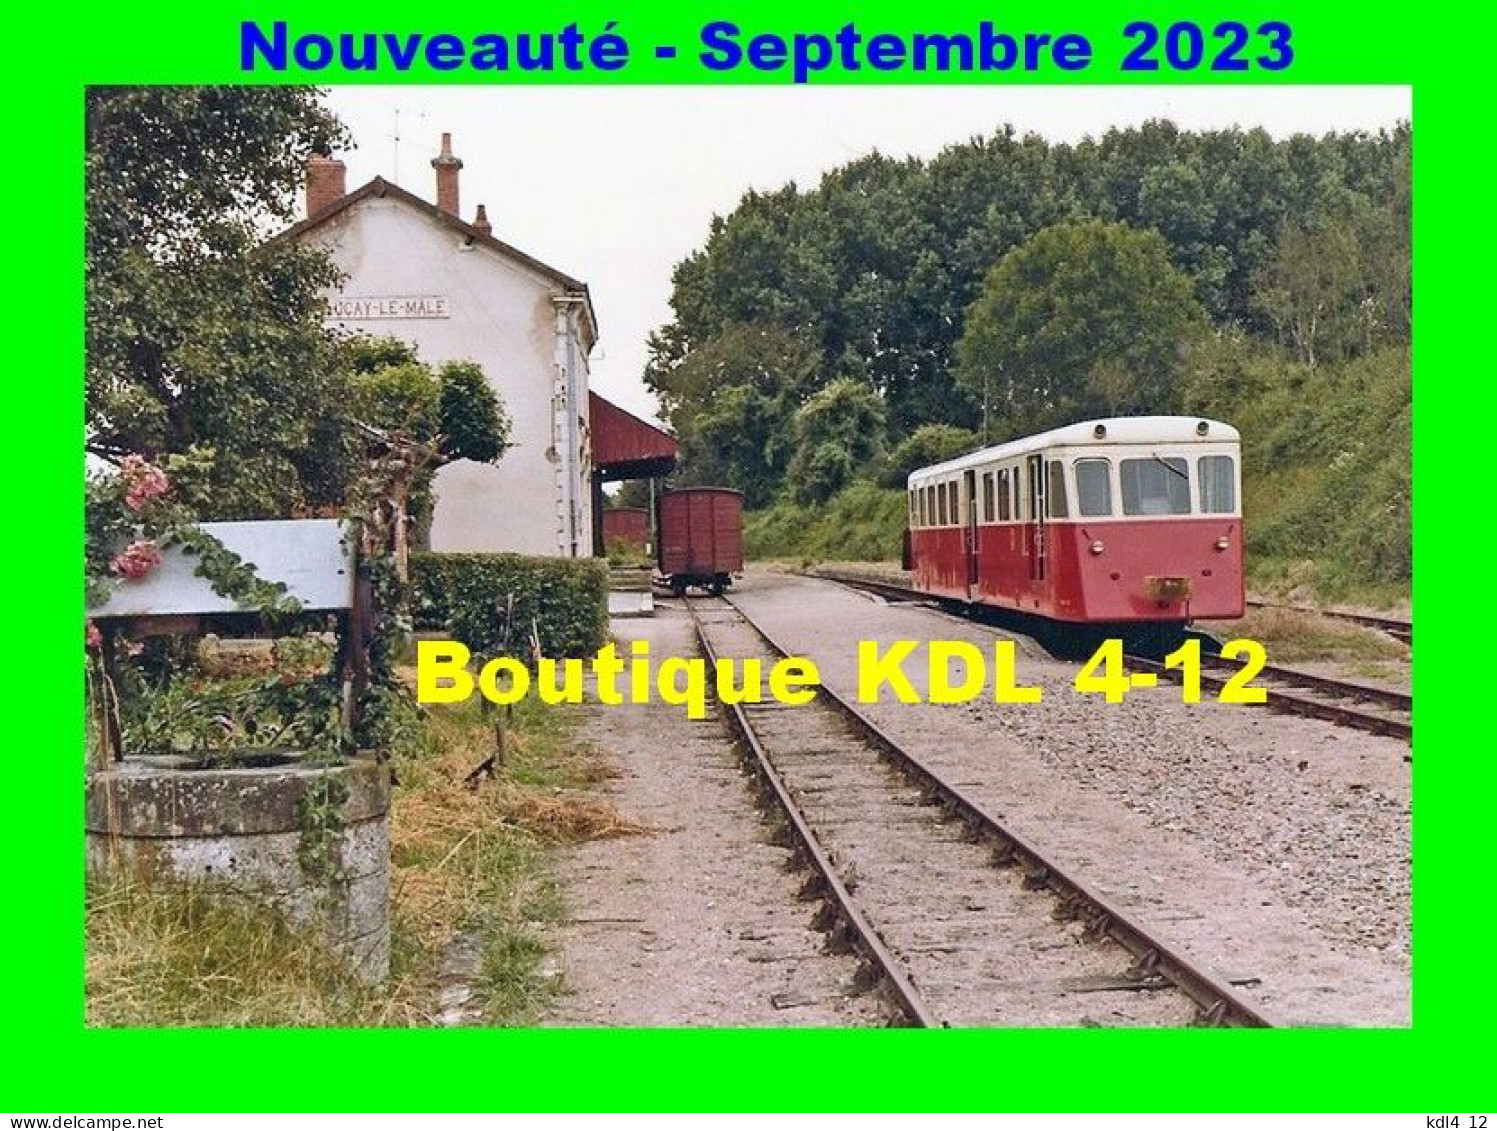 AL 917 - Autorail De Dion Bouton OC 2 En Gare - LUCAY-LE-MÂLE - Indre - BA - Seilbahnen